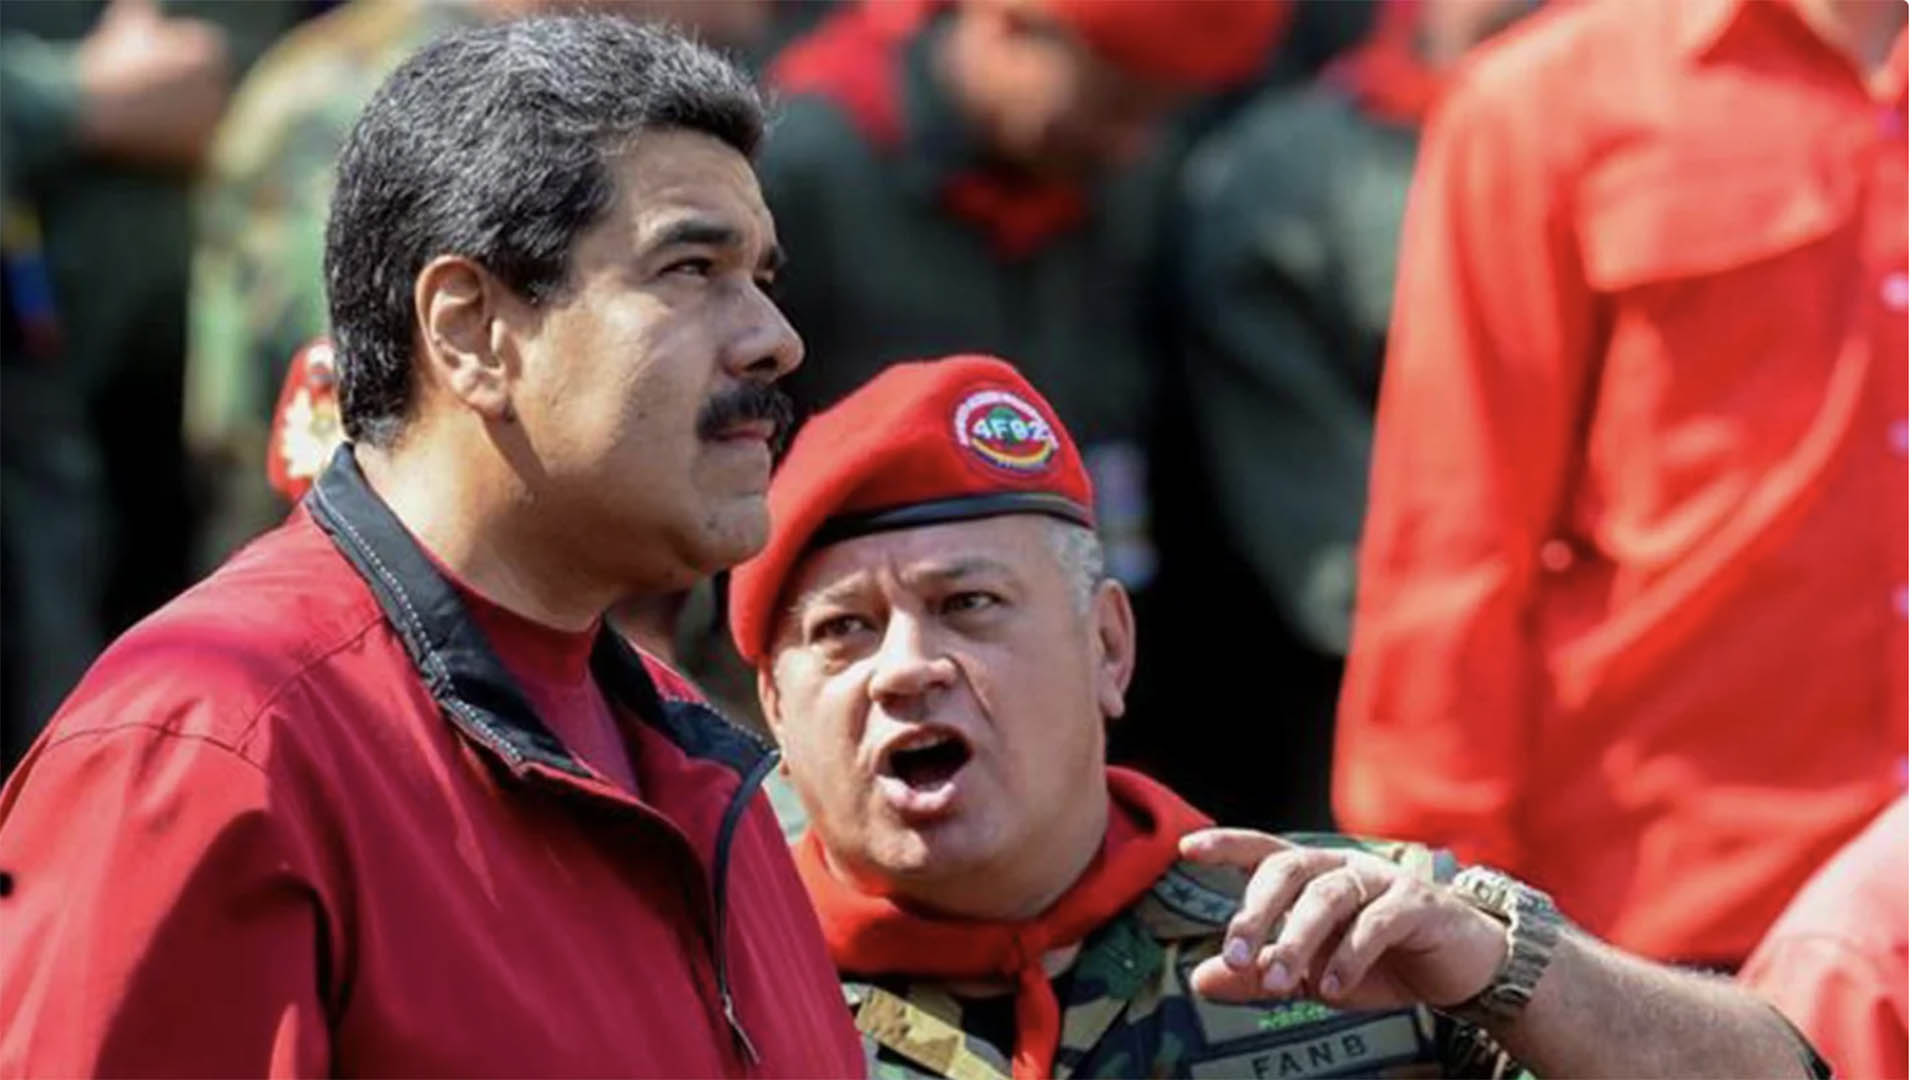 La estrategia del PSUV, que dirige Maduro y Diosdado, es ilegalizar al PCV o sustituirle la directiva como lo hizo con partidos de Oposición